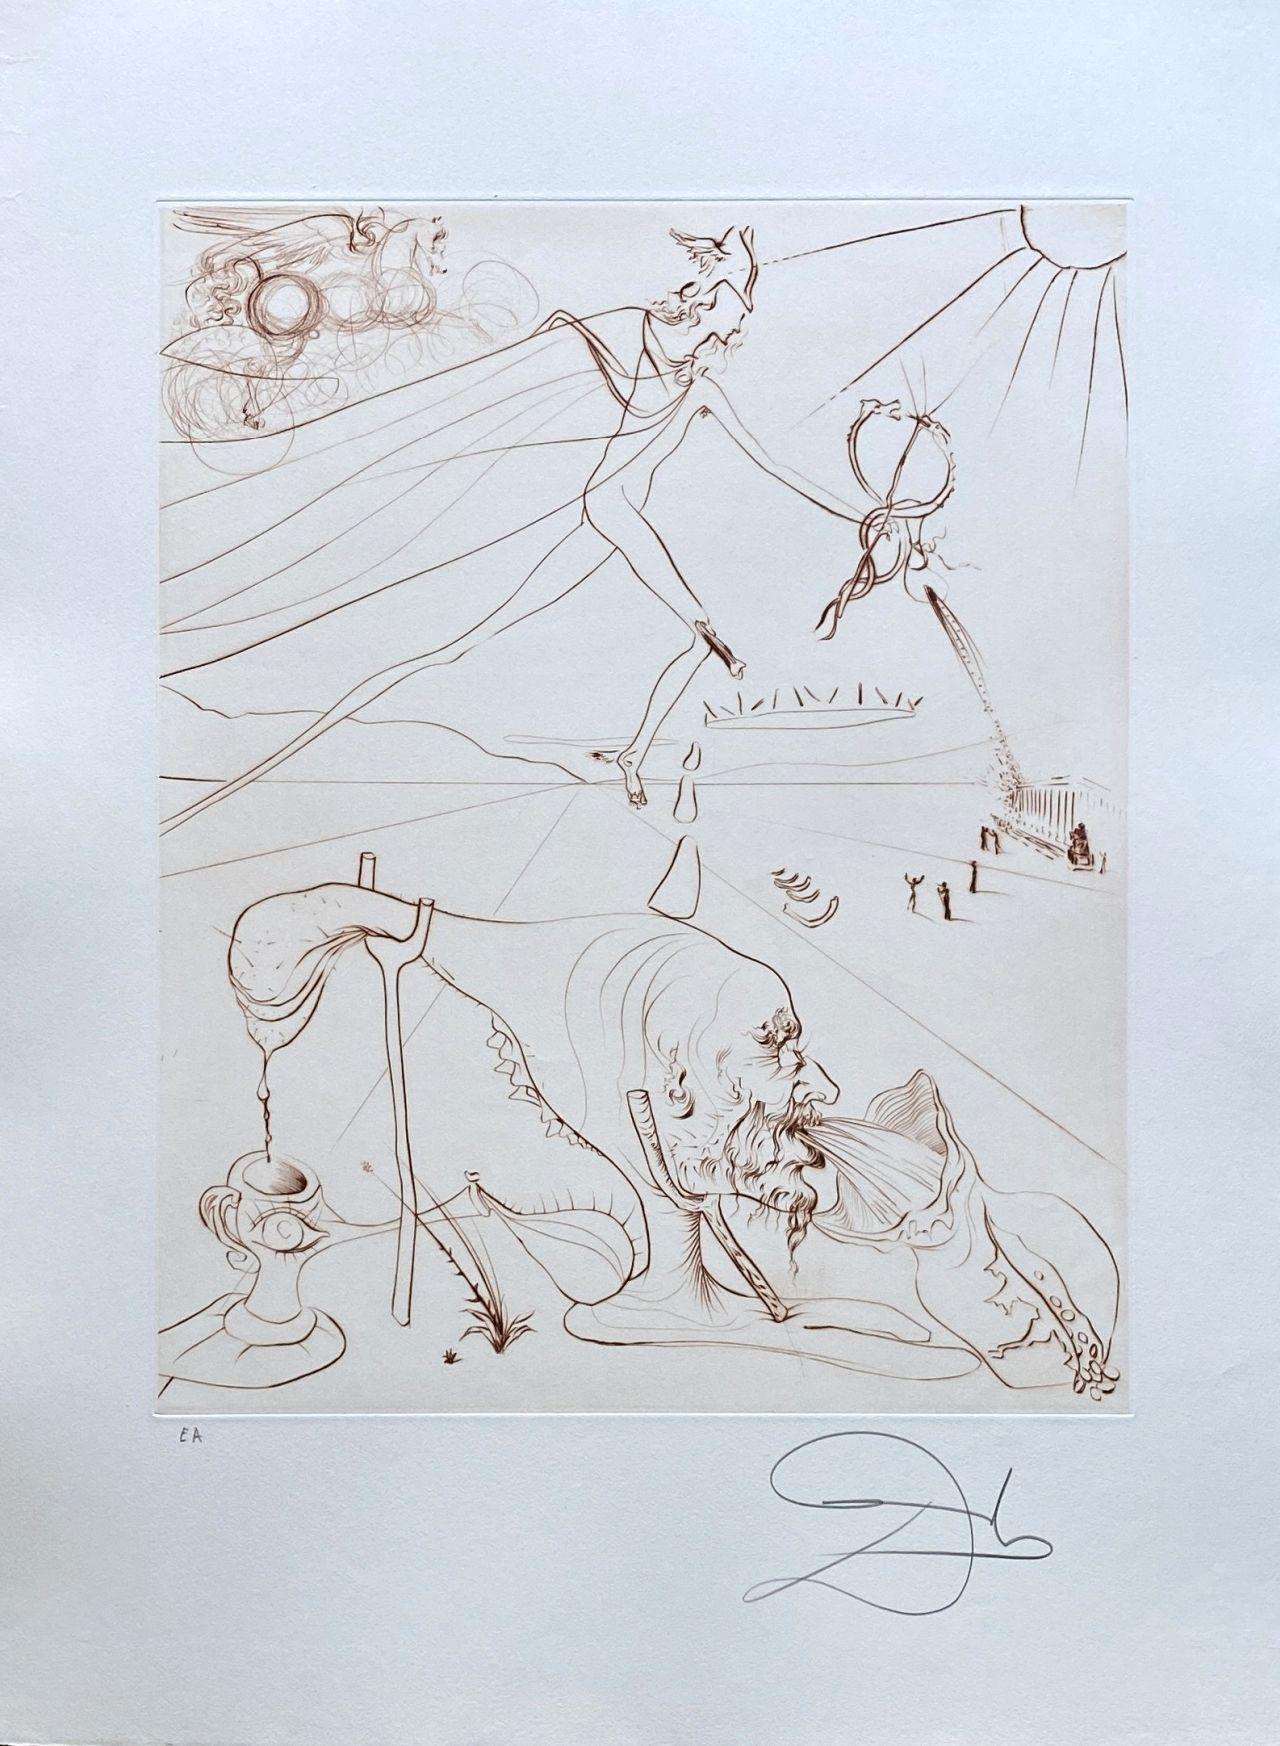 Salvador Dalí Landscape Print - The Alchemist - Original Etching Hand Signed #Lopsinger 581